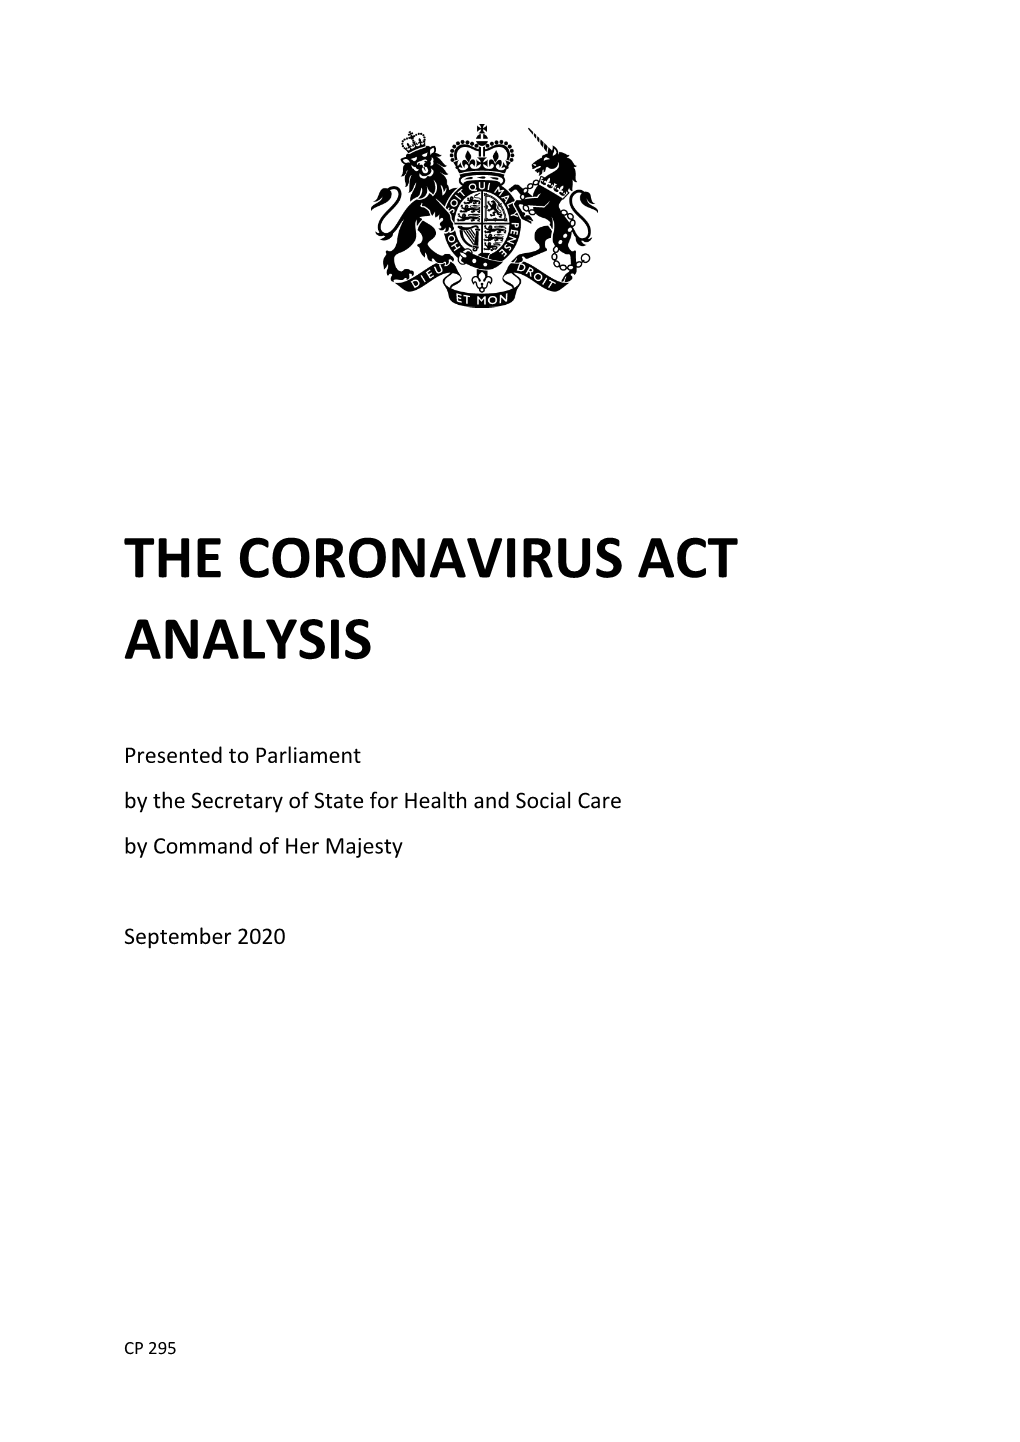 The Coronavirus Act Analysis